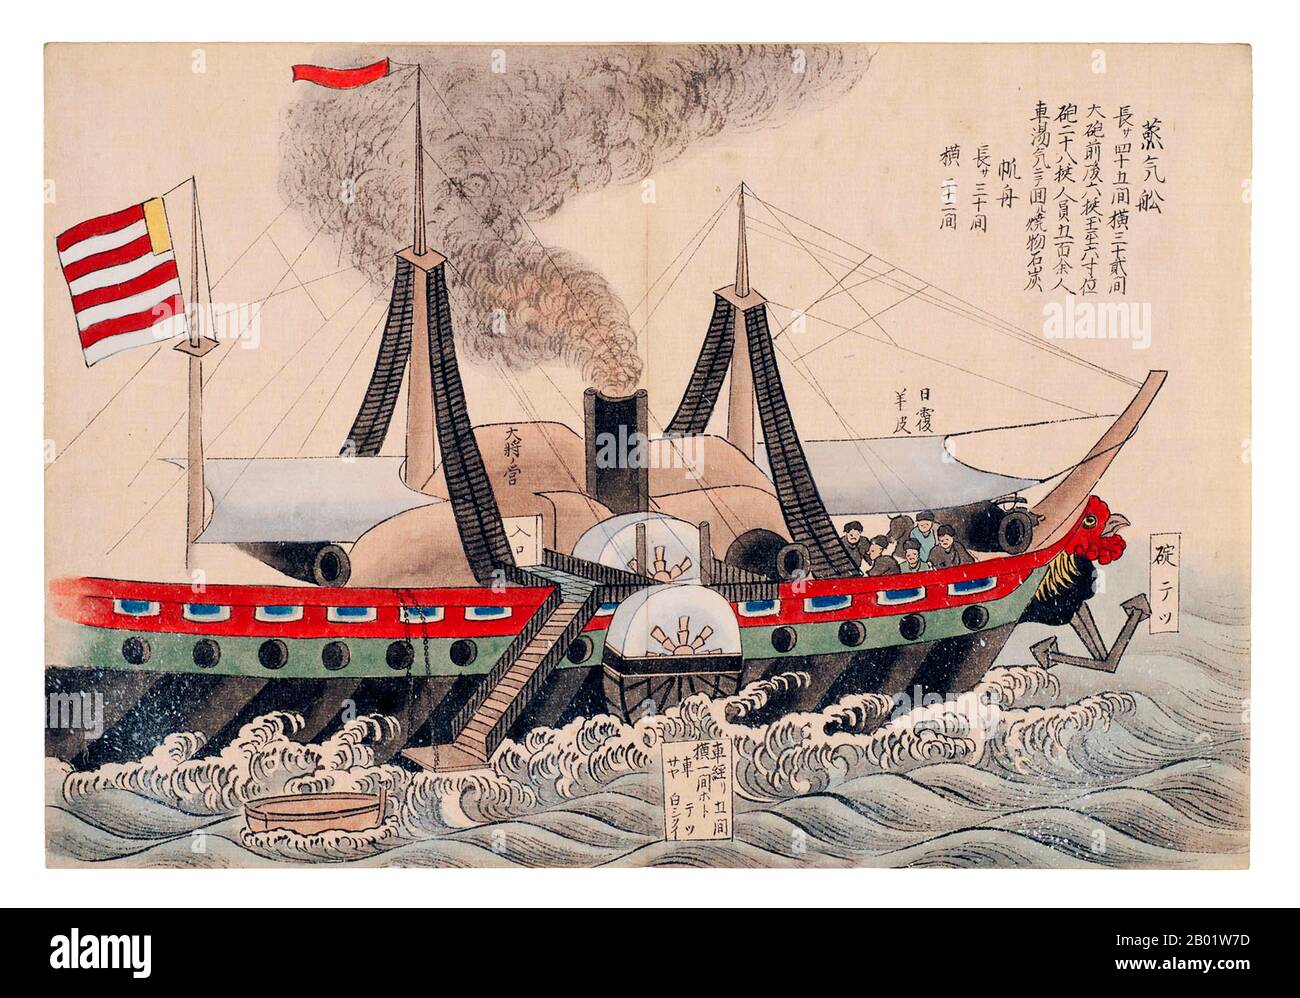 Japon/États-Unis : une peinture japonaise de l'USS Susquehanna, navire amiral des « navires noirs » du commodore Perry, dans la baie de Tokyo, le 8 juillet 1853. L'expédition de Perry est une expédition navale et diplomatique américaine au Japon, impliquant deux voyages distincts à destination et en provenance du Japon par des navires de la marine américaine, qui ont eu lieu entre 1853 et 1854. L'expédition était commandée par le commodore Matthew Calbraith Perry (1794-1858). Elle aboutit à l'ouverture du Japon au commerce américain et international et à l'établissement de relations diplomatiques entre le Japon et les « grandes puissances » occidentales. Banque D'Images